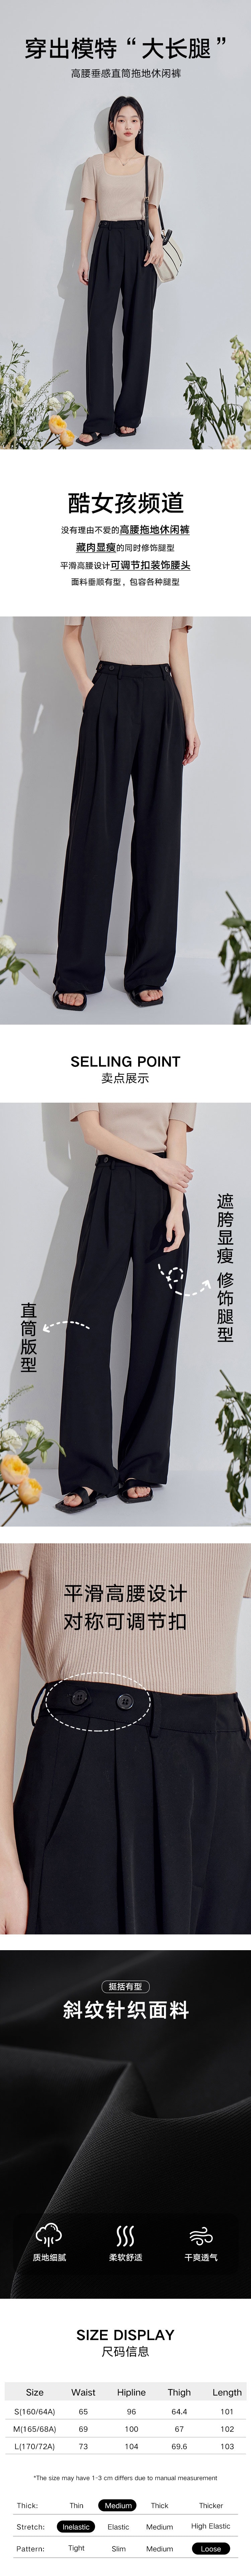 【中国直邮】HSPM 新款高腰显瘦拖地直筒休闲裤 黑色 S